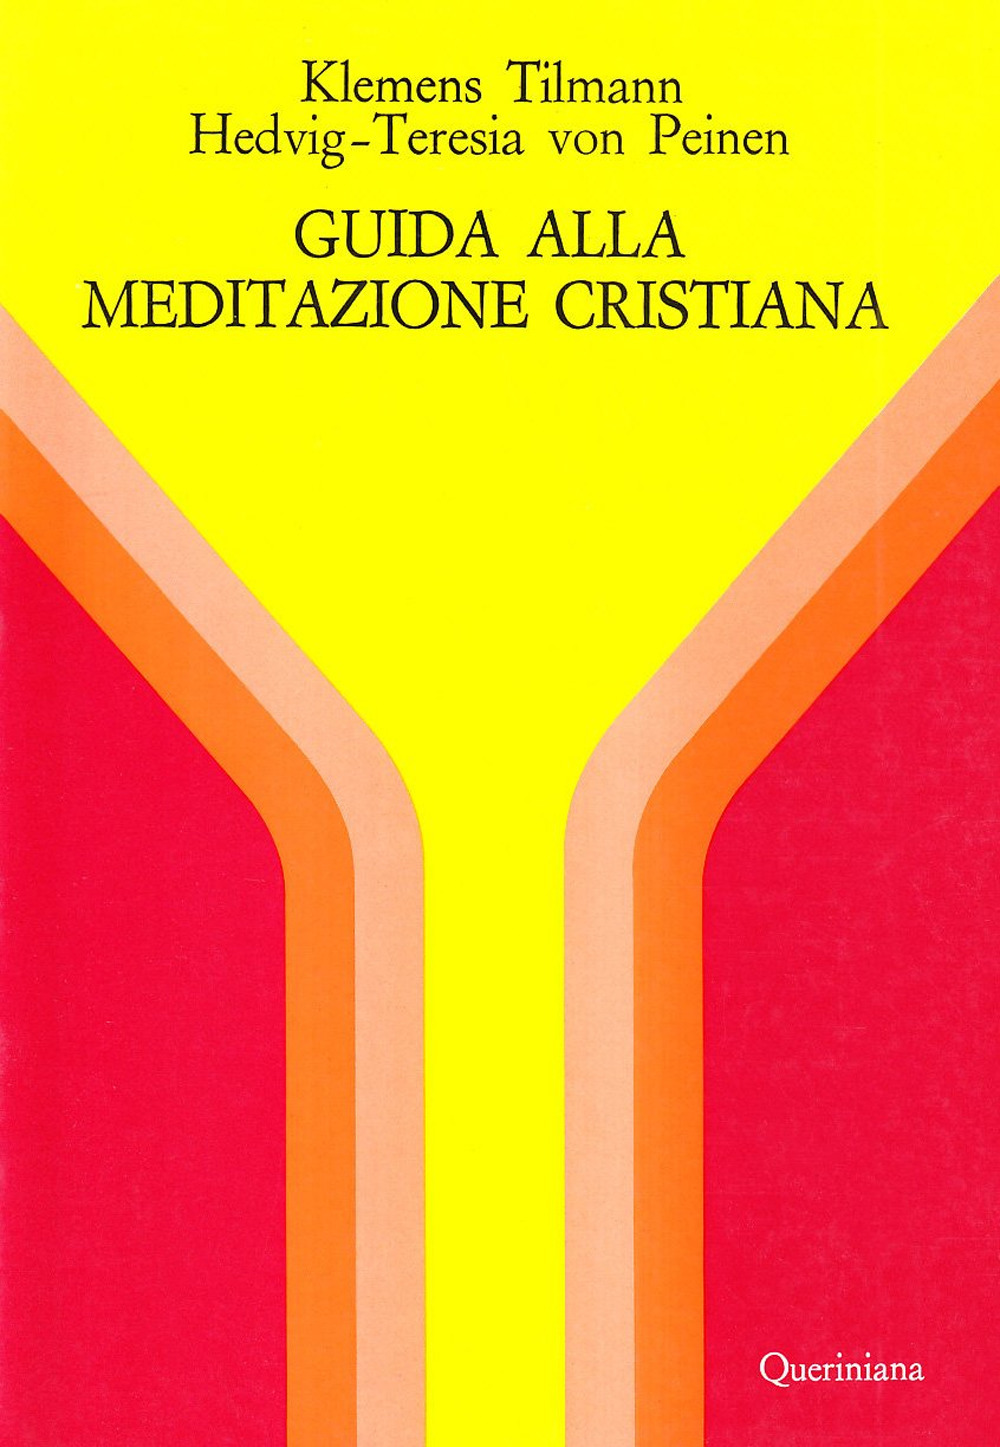 Image of Guida alla meditazione cristiana